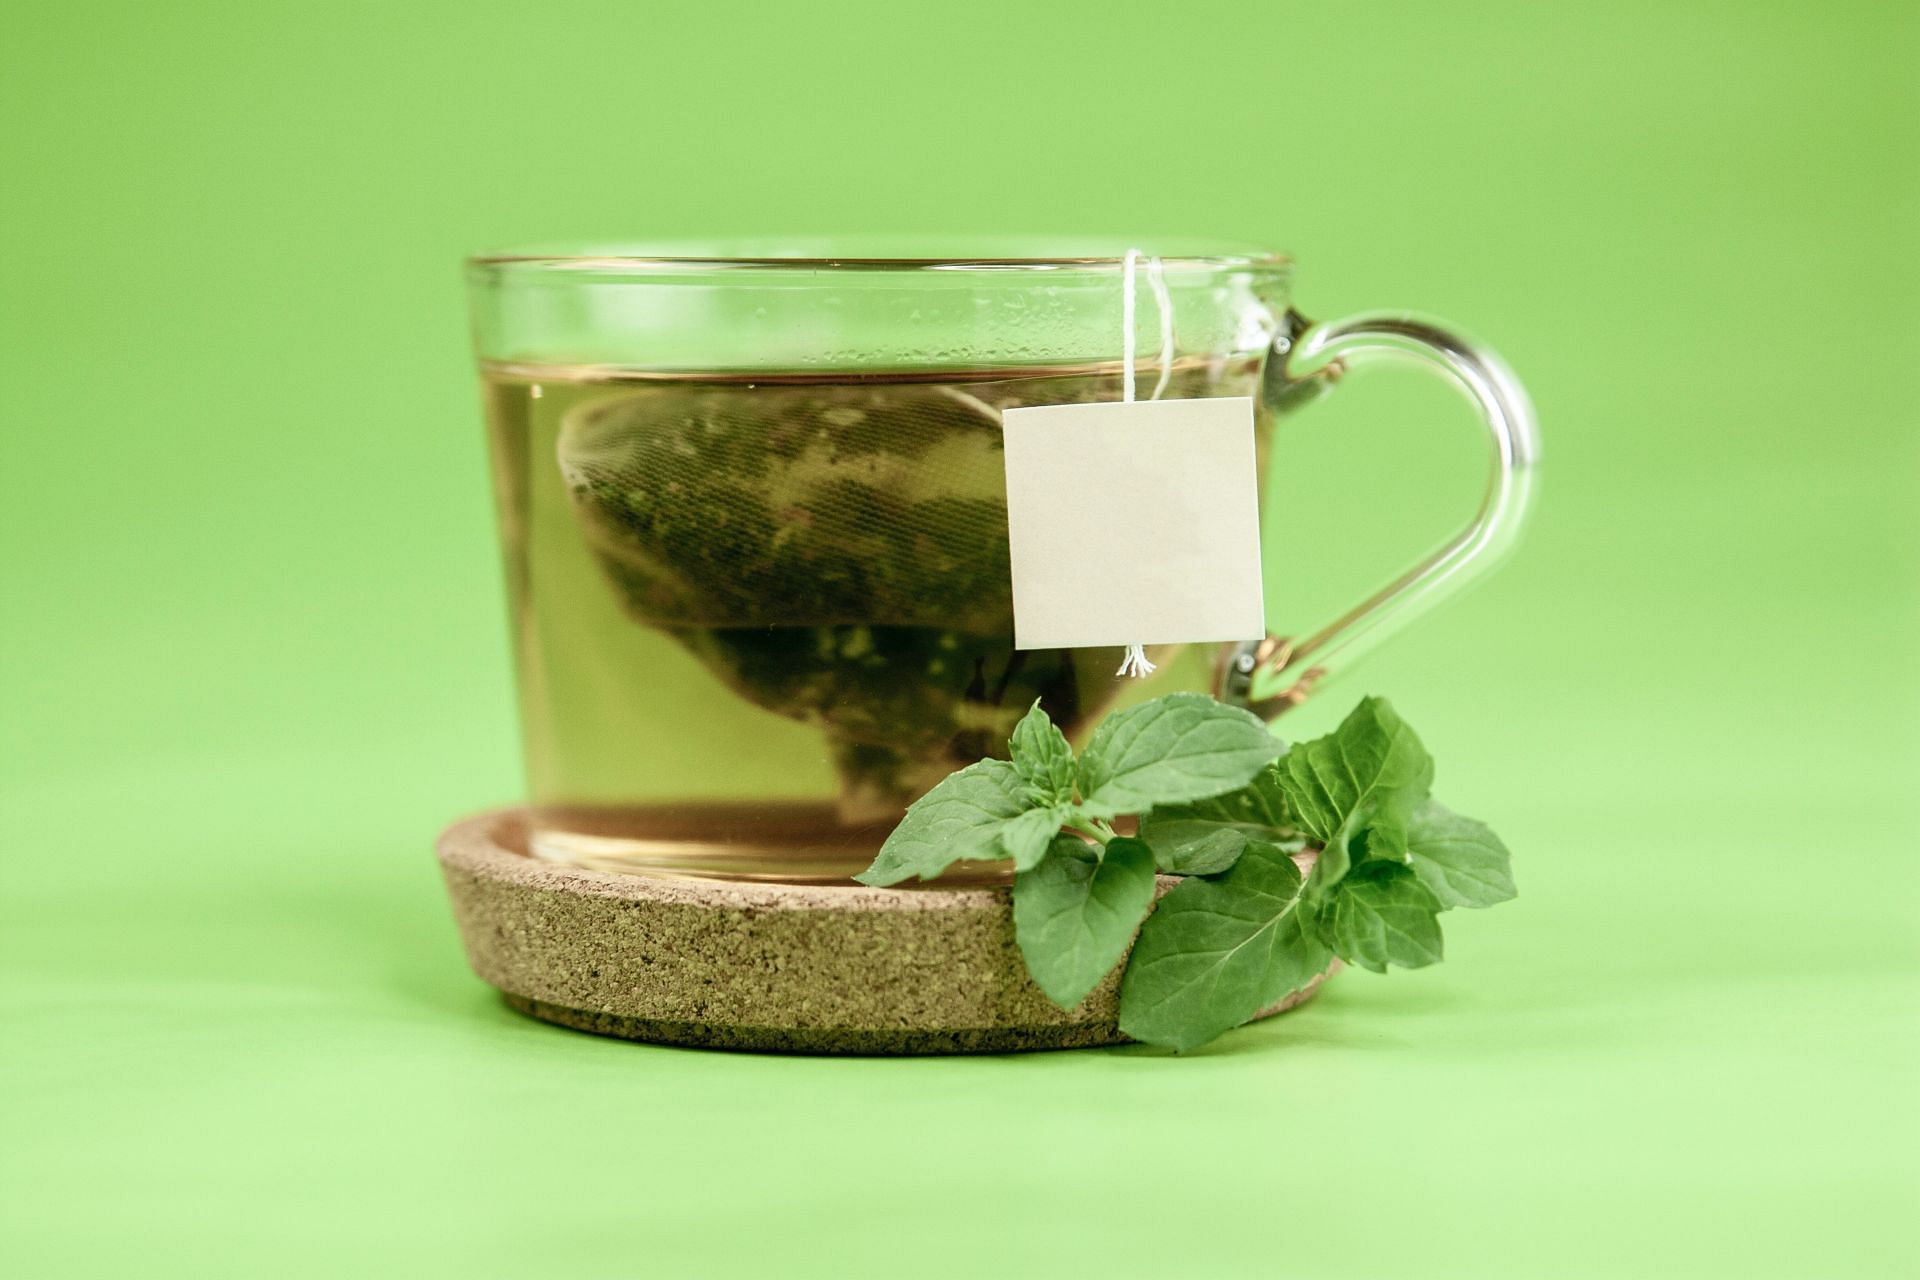 Le thé vert est excellent pour perdre du poids.  Voici quelques arguments en sa faveur.  (Image via unsplash/Laark Boshoff)